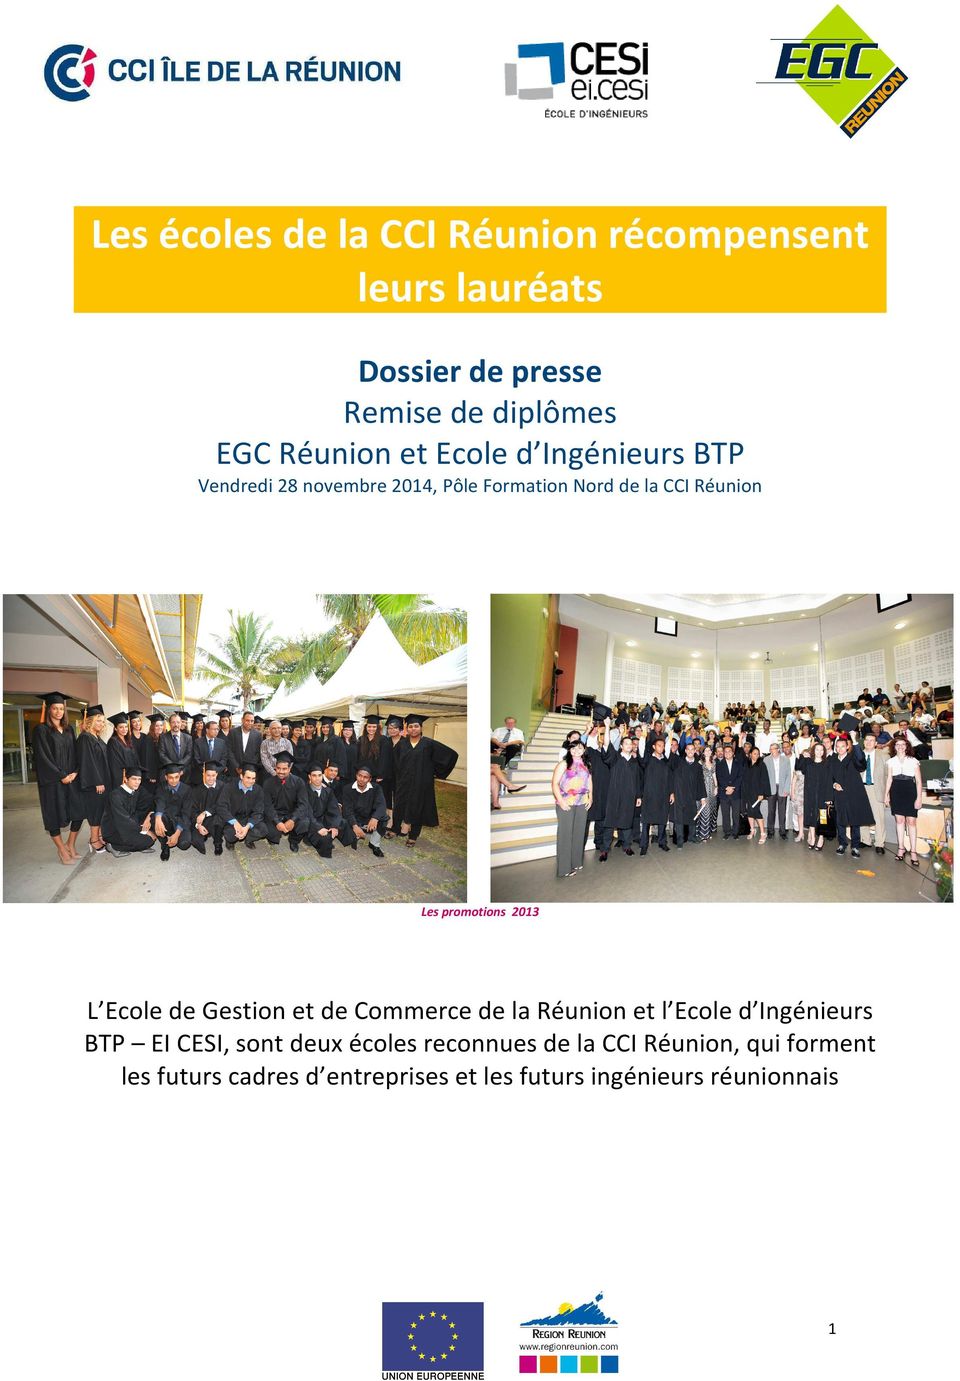 2013 L Ecole de Gestion et de Commerce de la Réunion et l Ecole d Ingénieurs BTP EI CESI, sont deux écoles